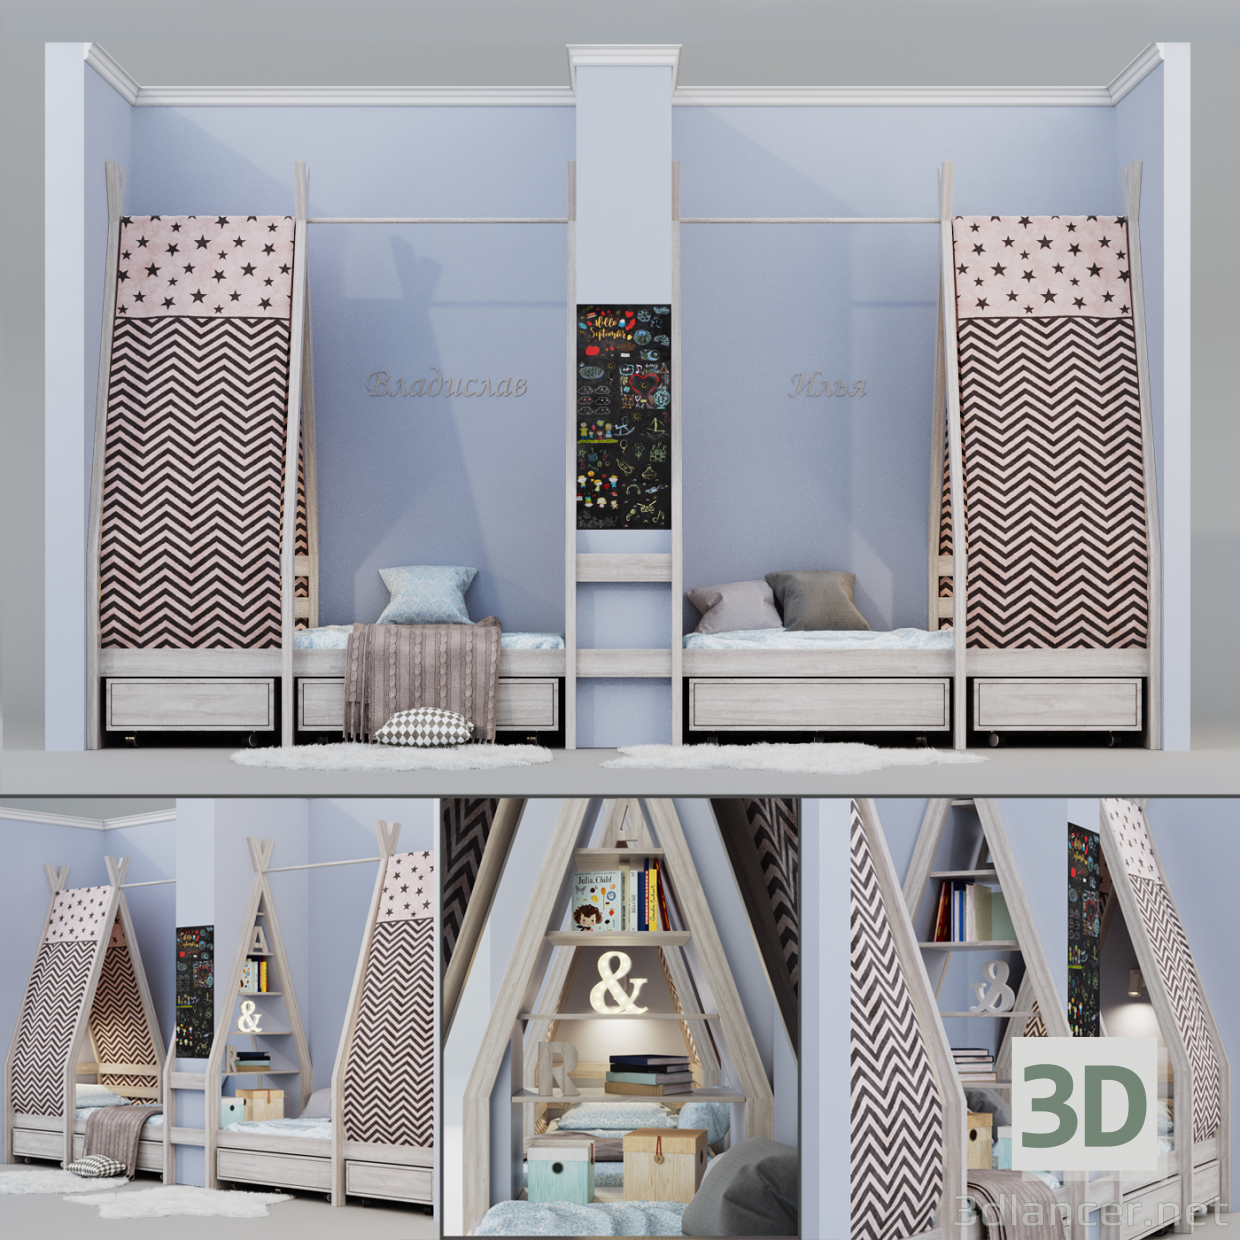 3D Çocuk yatağı - Kızılderili çadırı (house) modeli satın - render